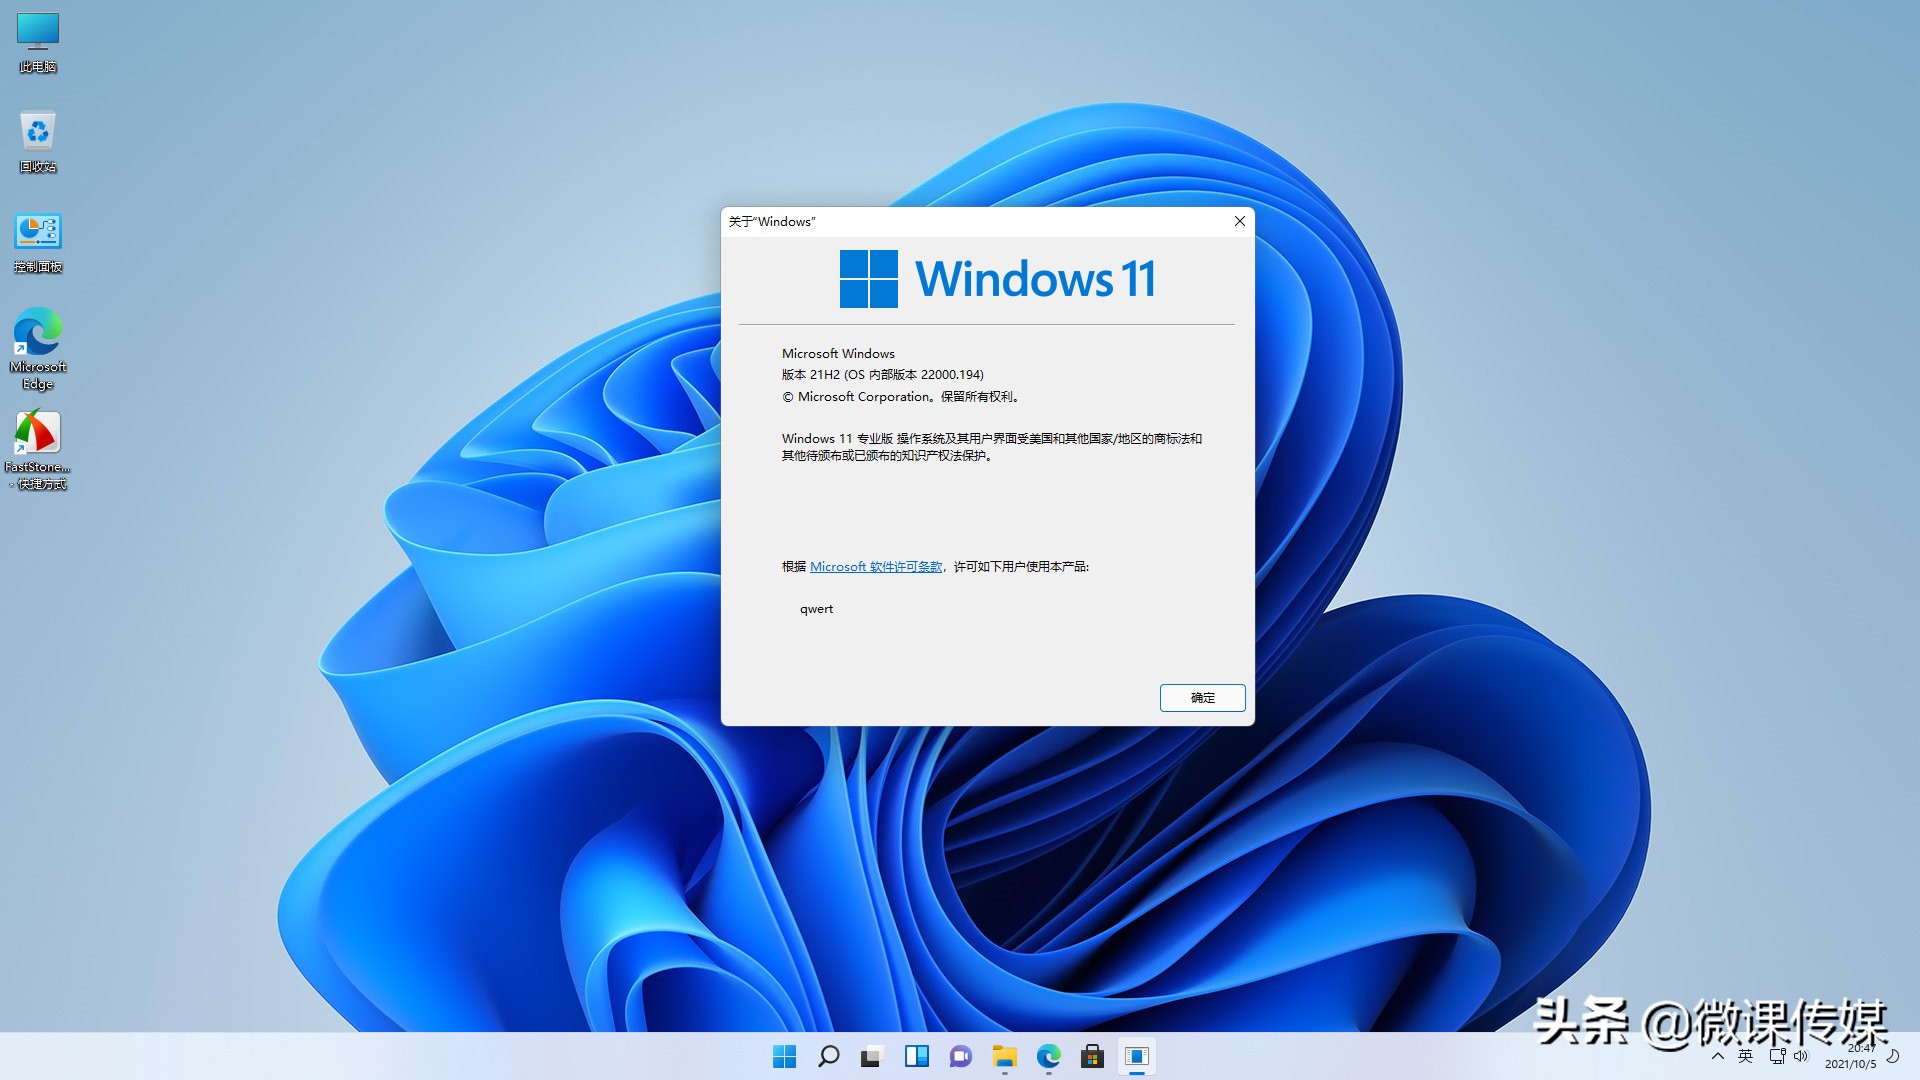 Windows10Android双重系统：灵活多样的操作选择及个人体验  第2张